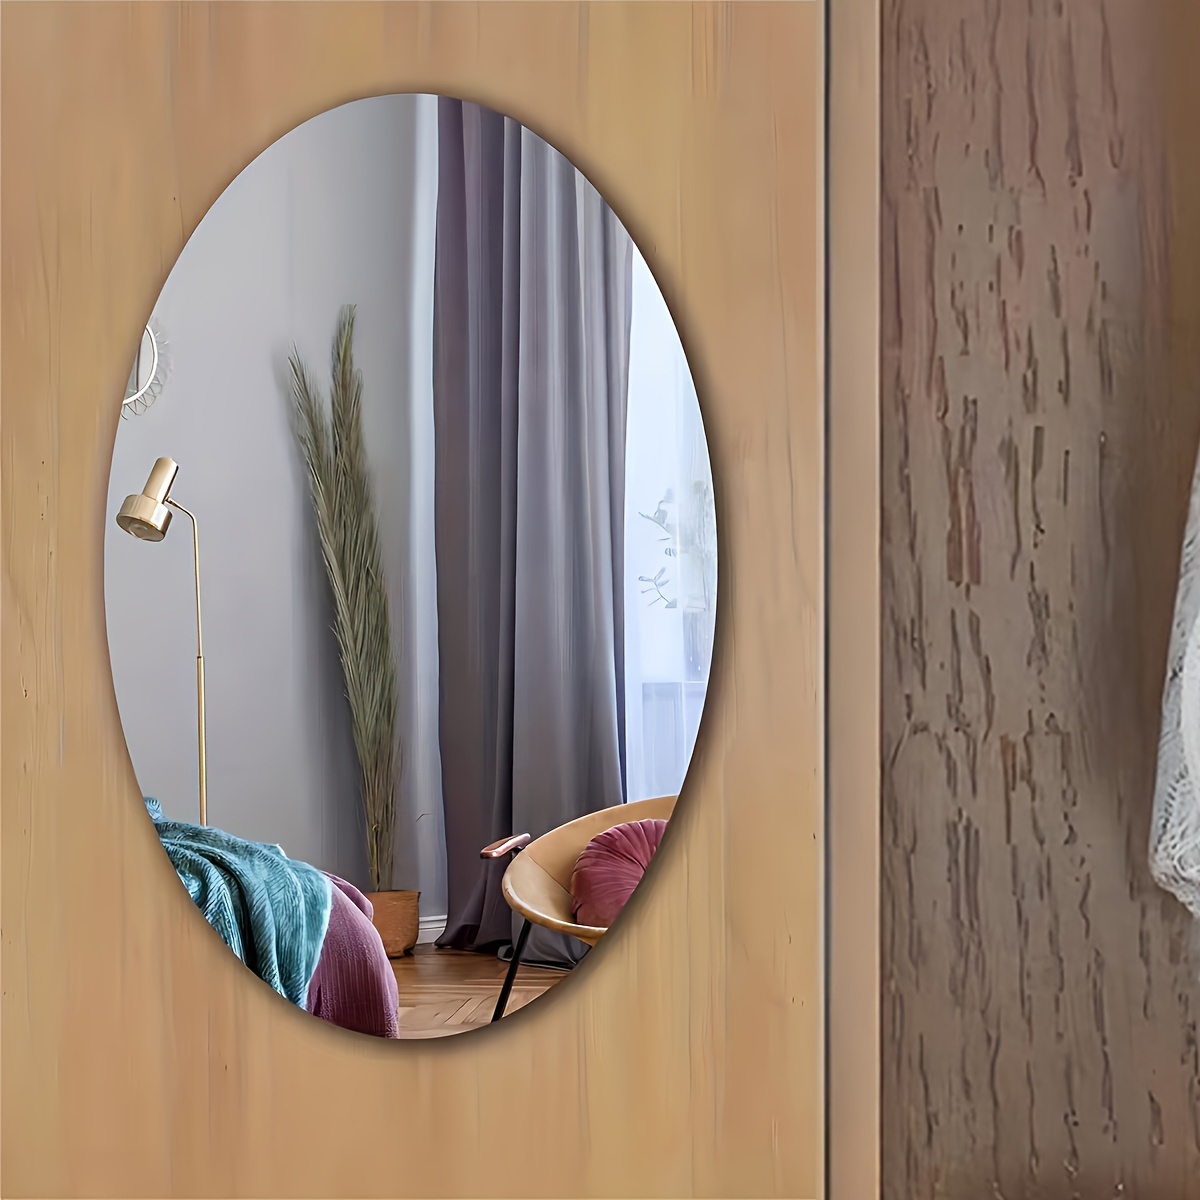  Tyoo Papel de espejo autoadhesivo, adhesivo de espejo HD, espejo  de longitud completa sin marco, adhesivo de espejo de pared, adhesivo  reflectante opaco de vidrio (color : plata, tamaño: 11.8 x